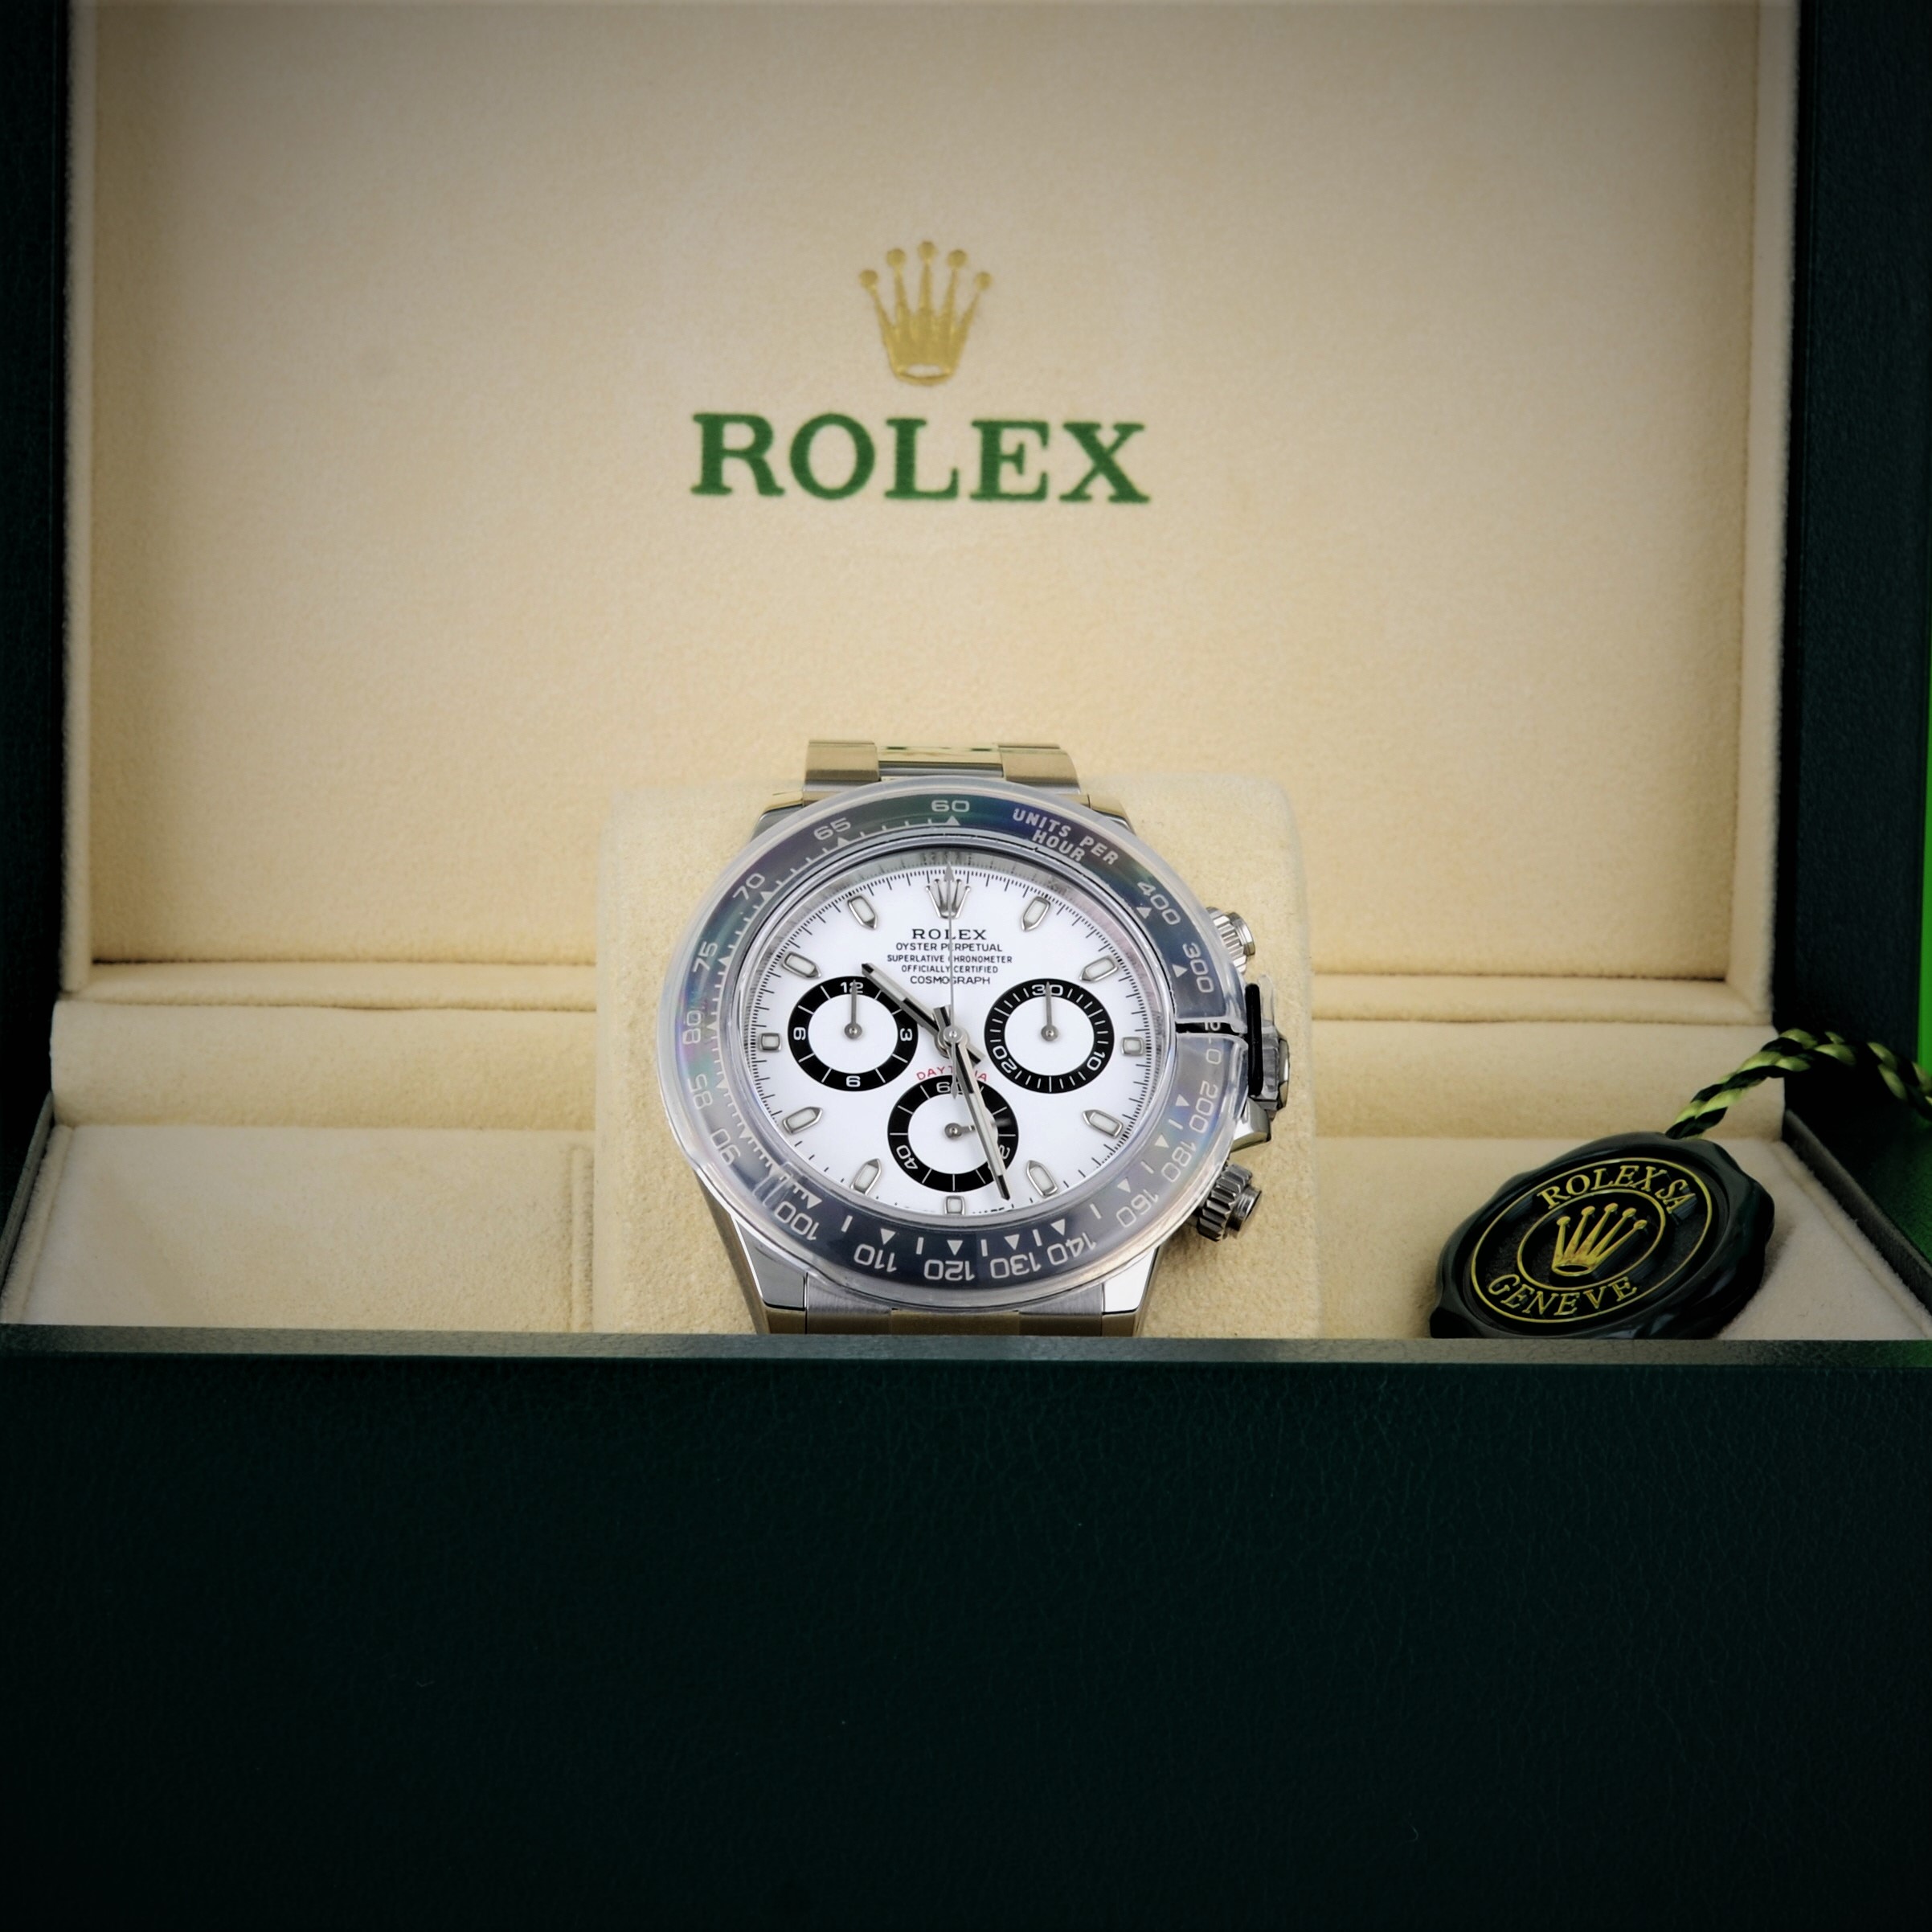 nos-conseils-pour-choisir-une-montre-de-luxe-cresus- (3)